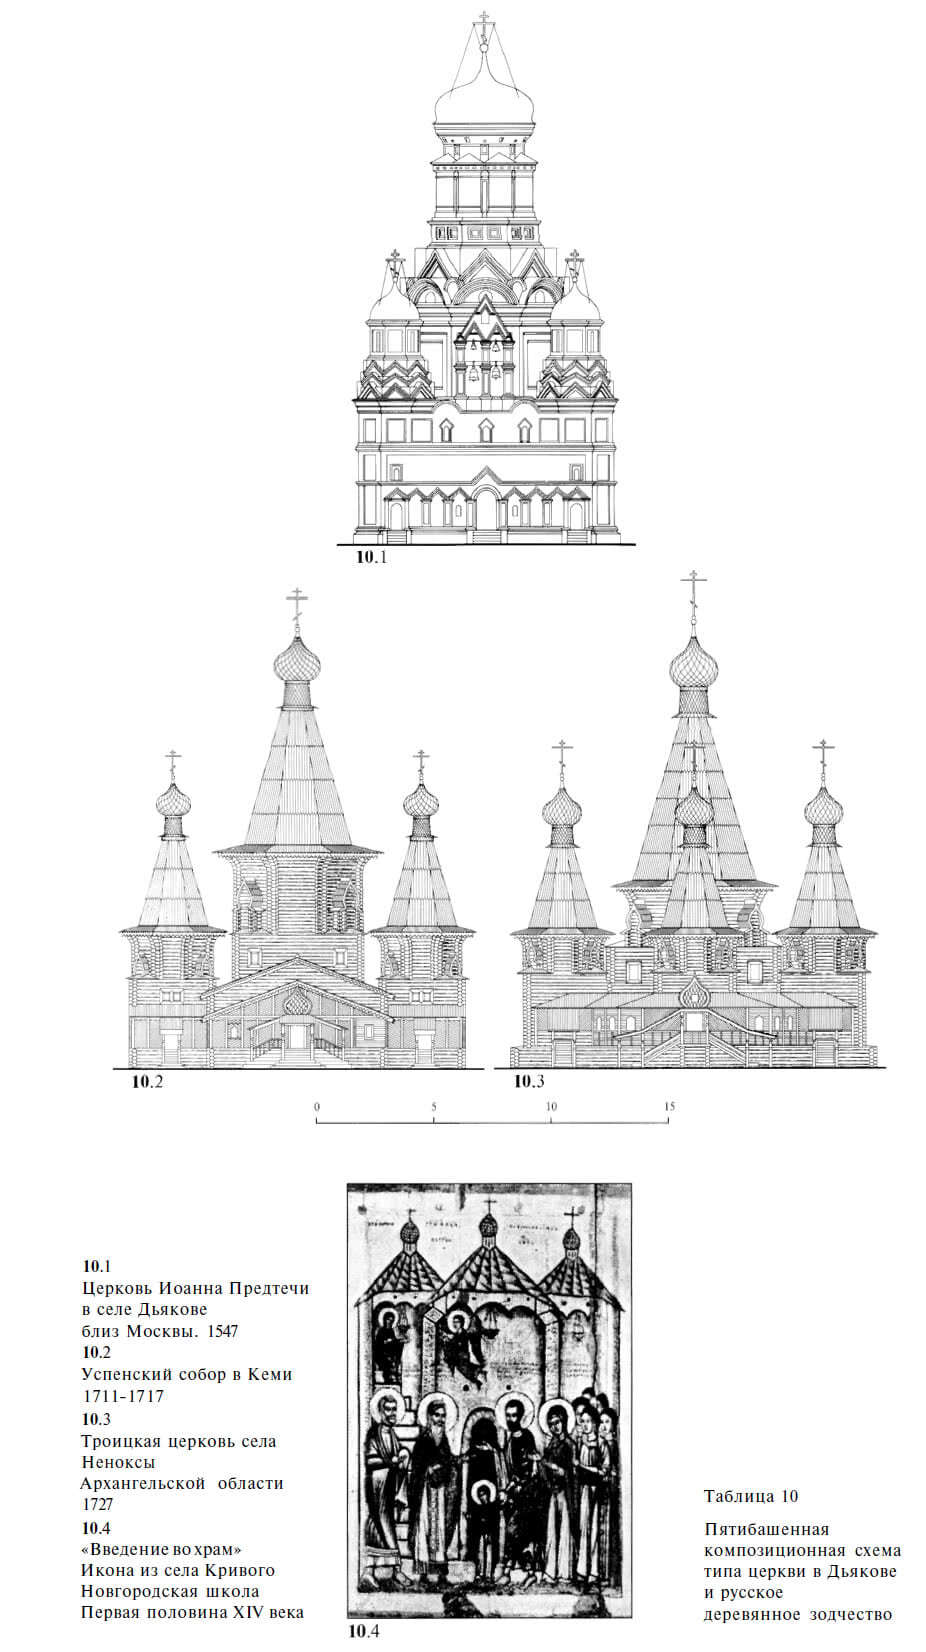 Пятибашенная композиционная схема типа церкви в Дьякове и русское деревянное зодчество